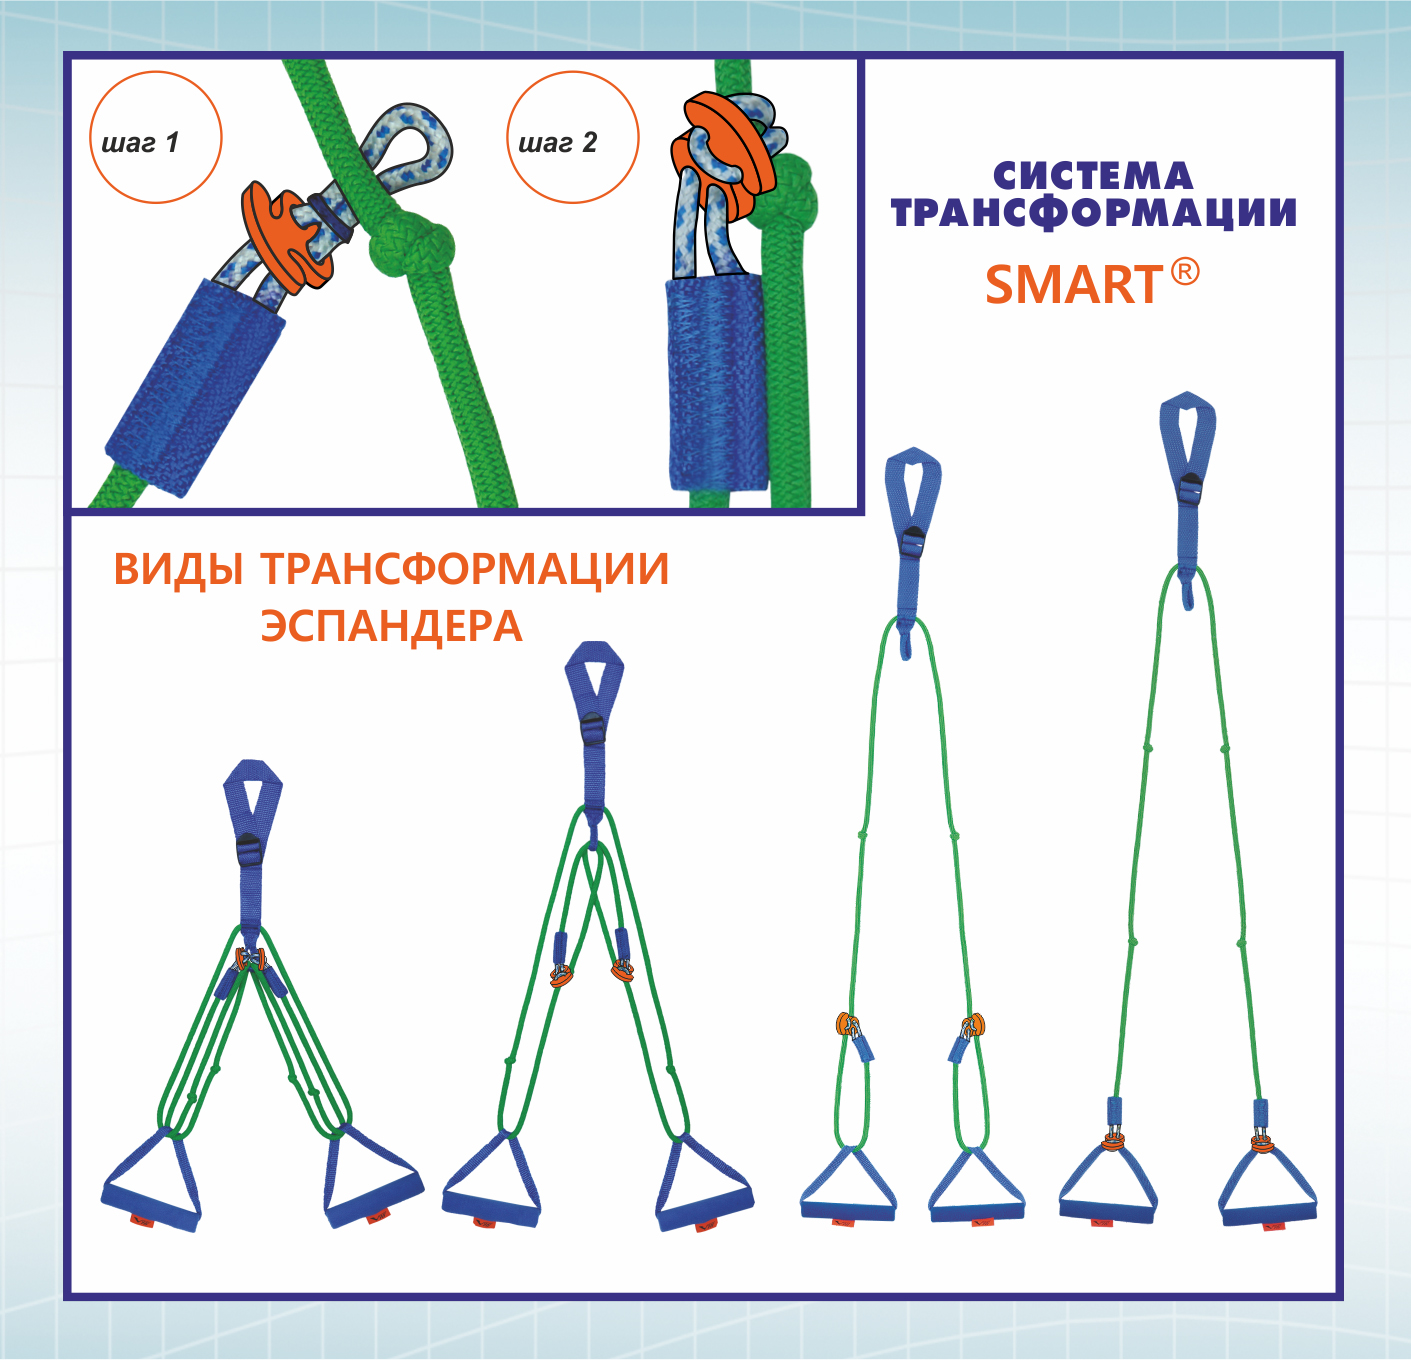 эспандер трансформер - система SMART